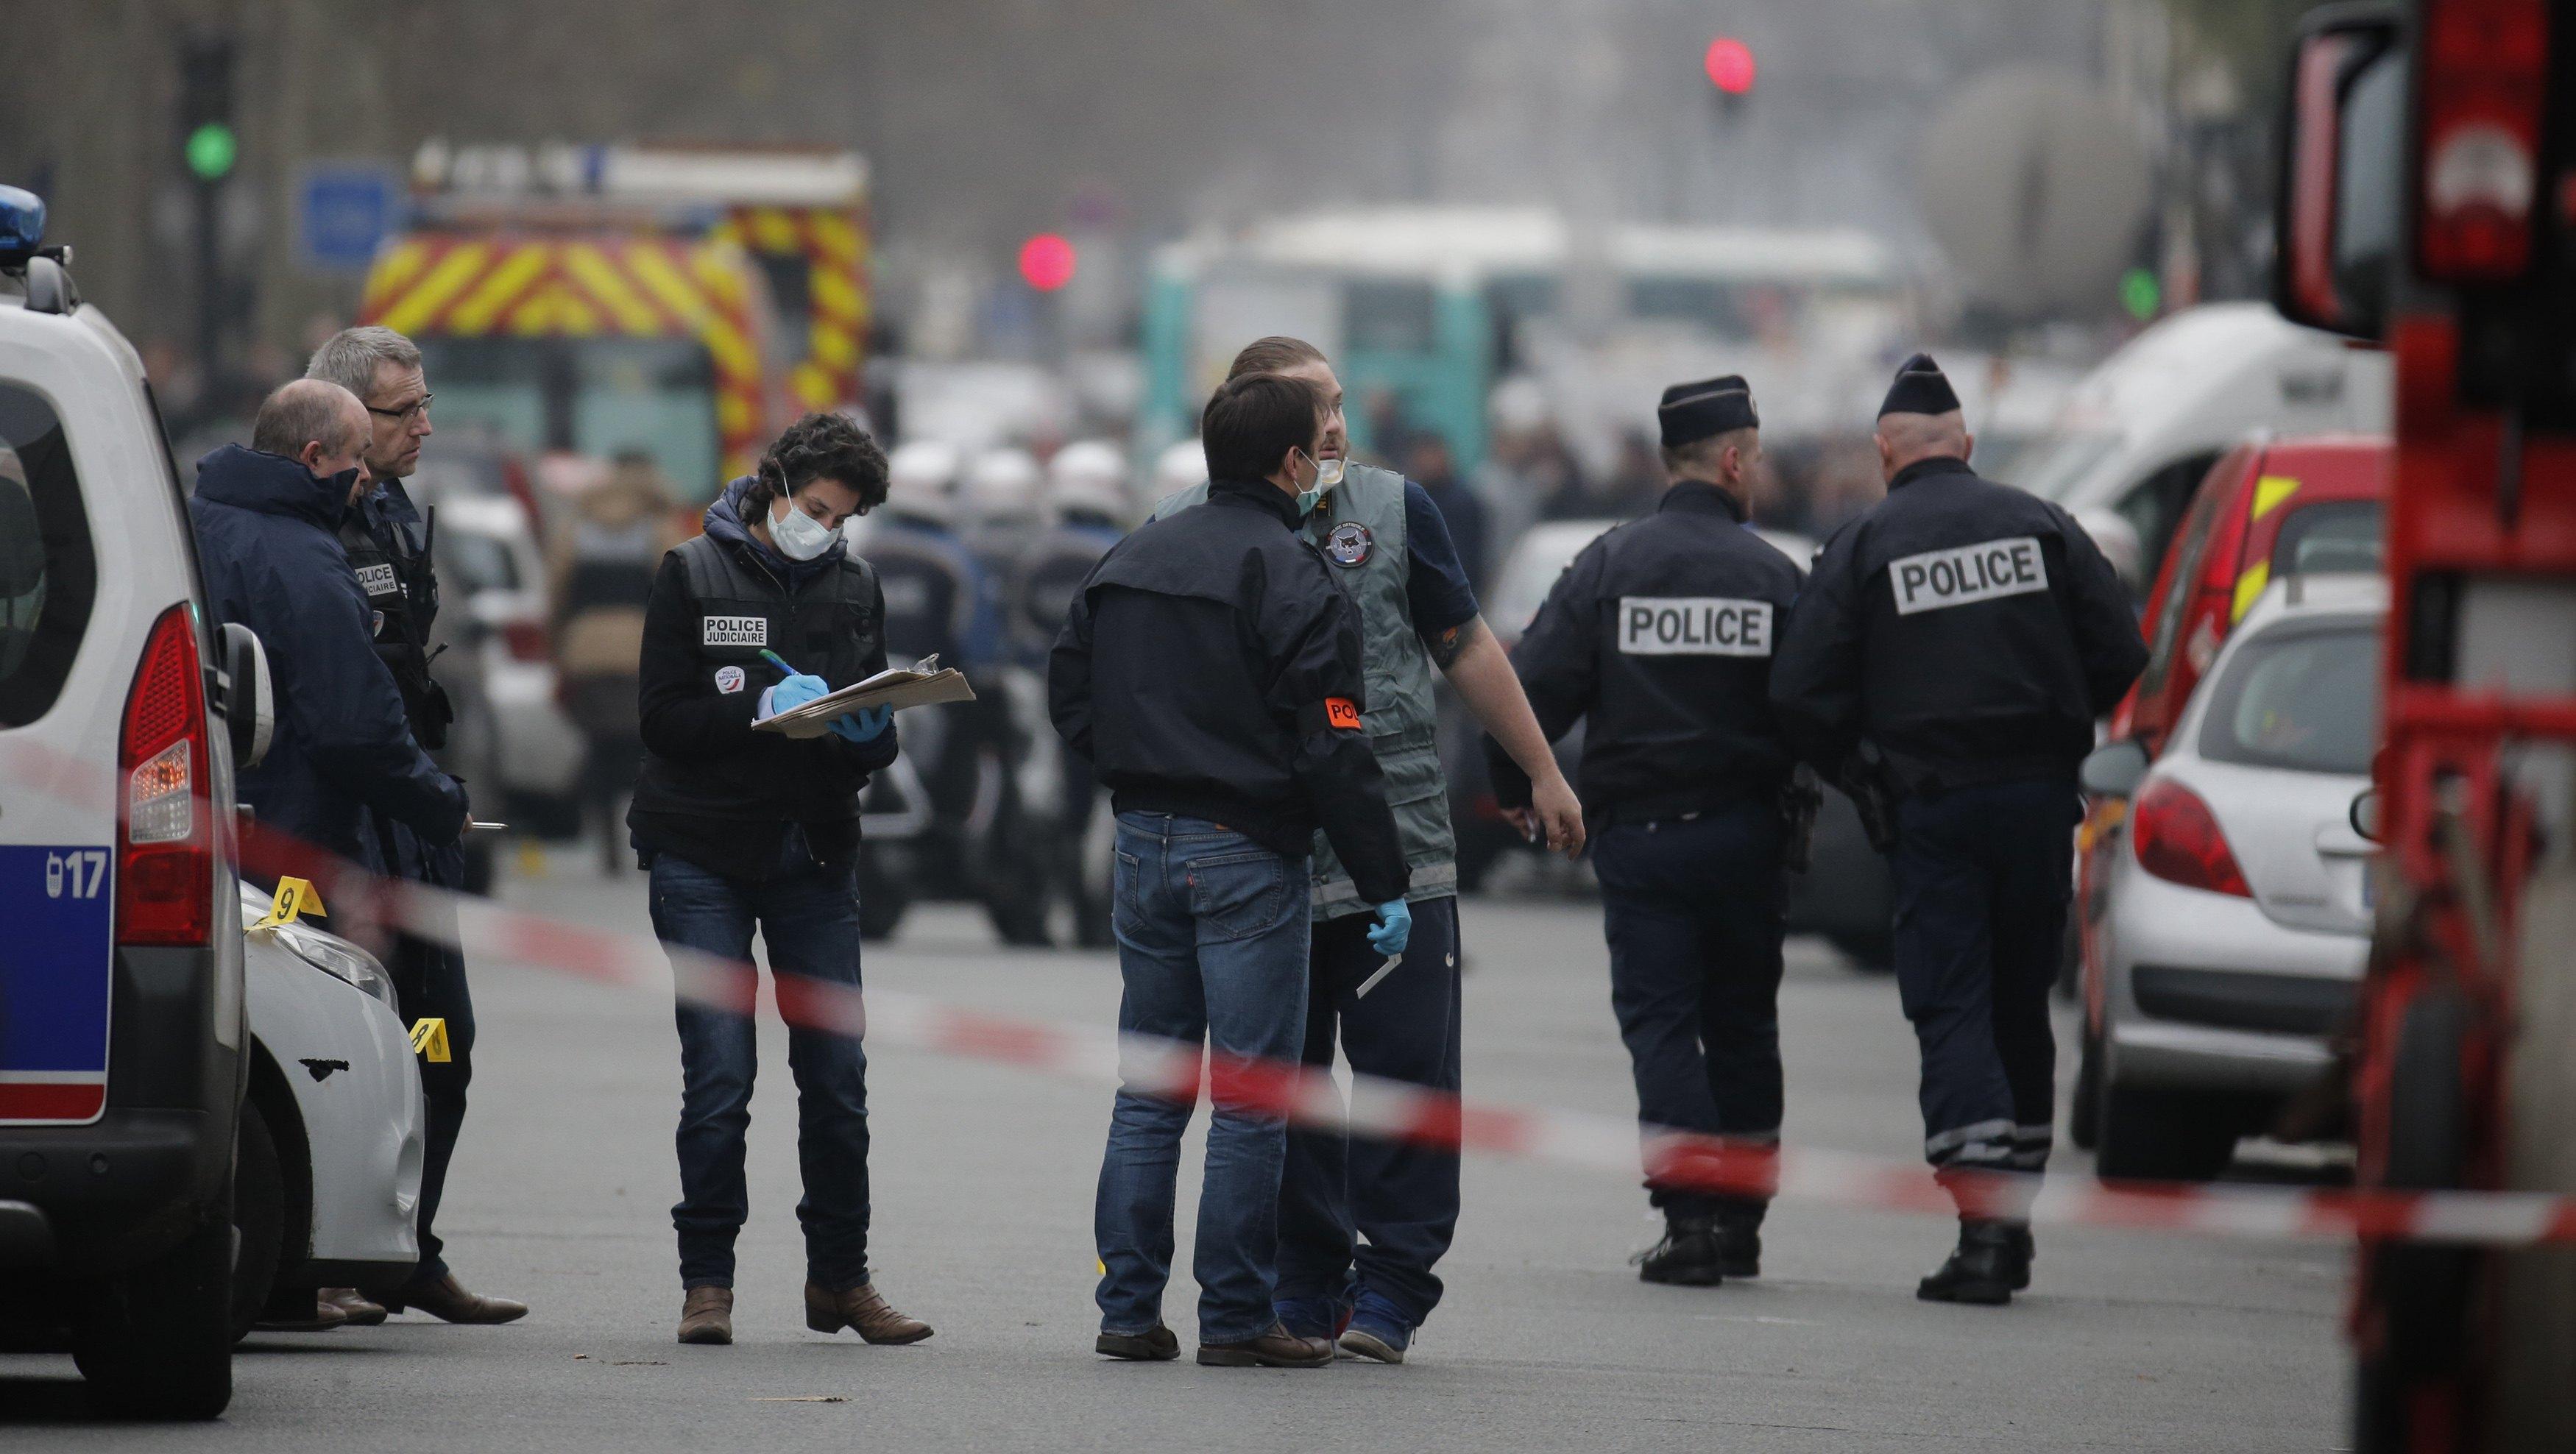 "واشنطن تايمز": اعتداءات باريس الأشد عنفا منذ الحرب العالمية الثانية